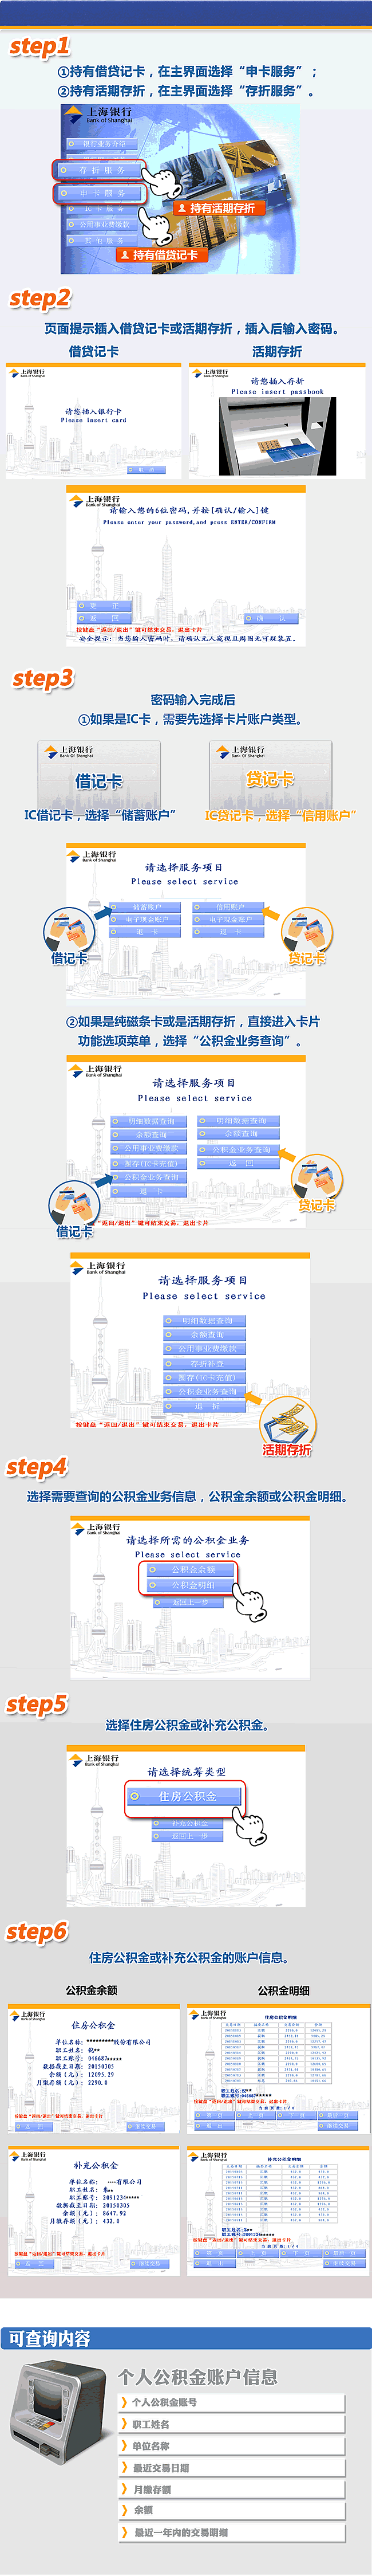 上海银行住房公积金余额及明细查询流程图解